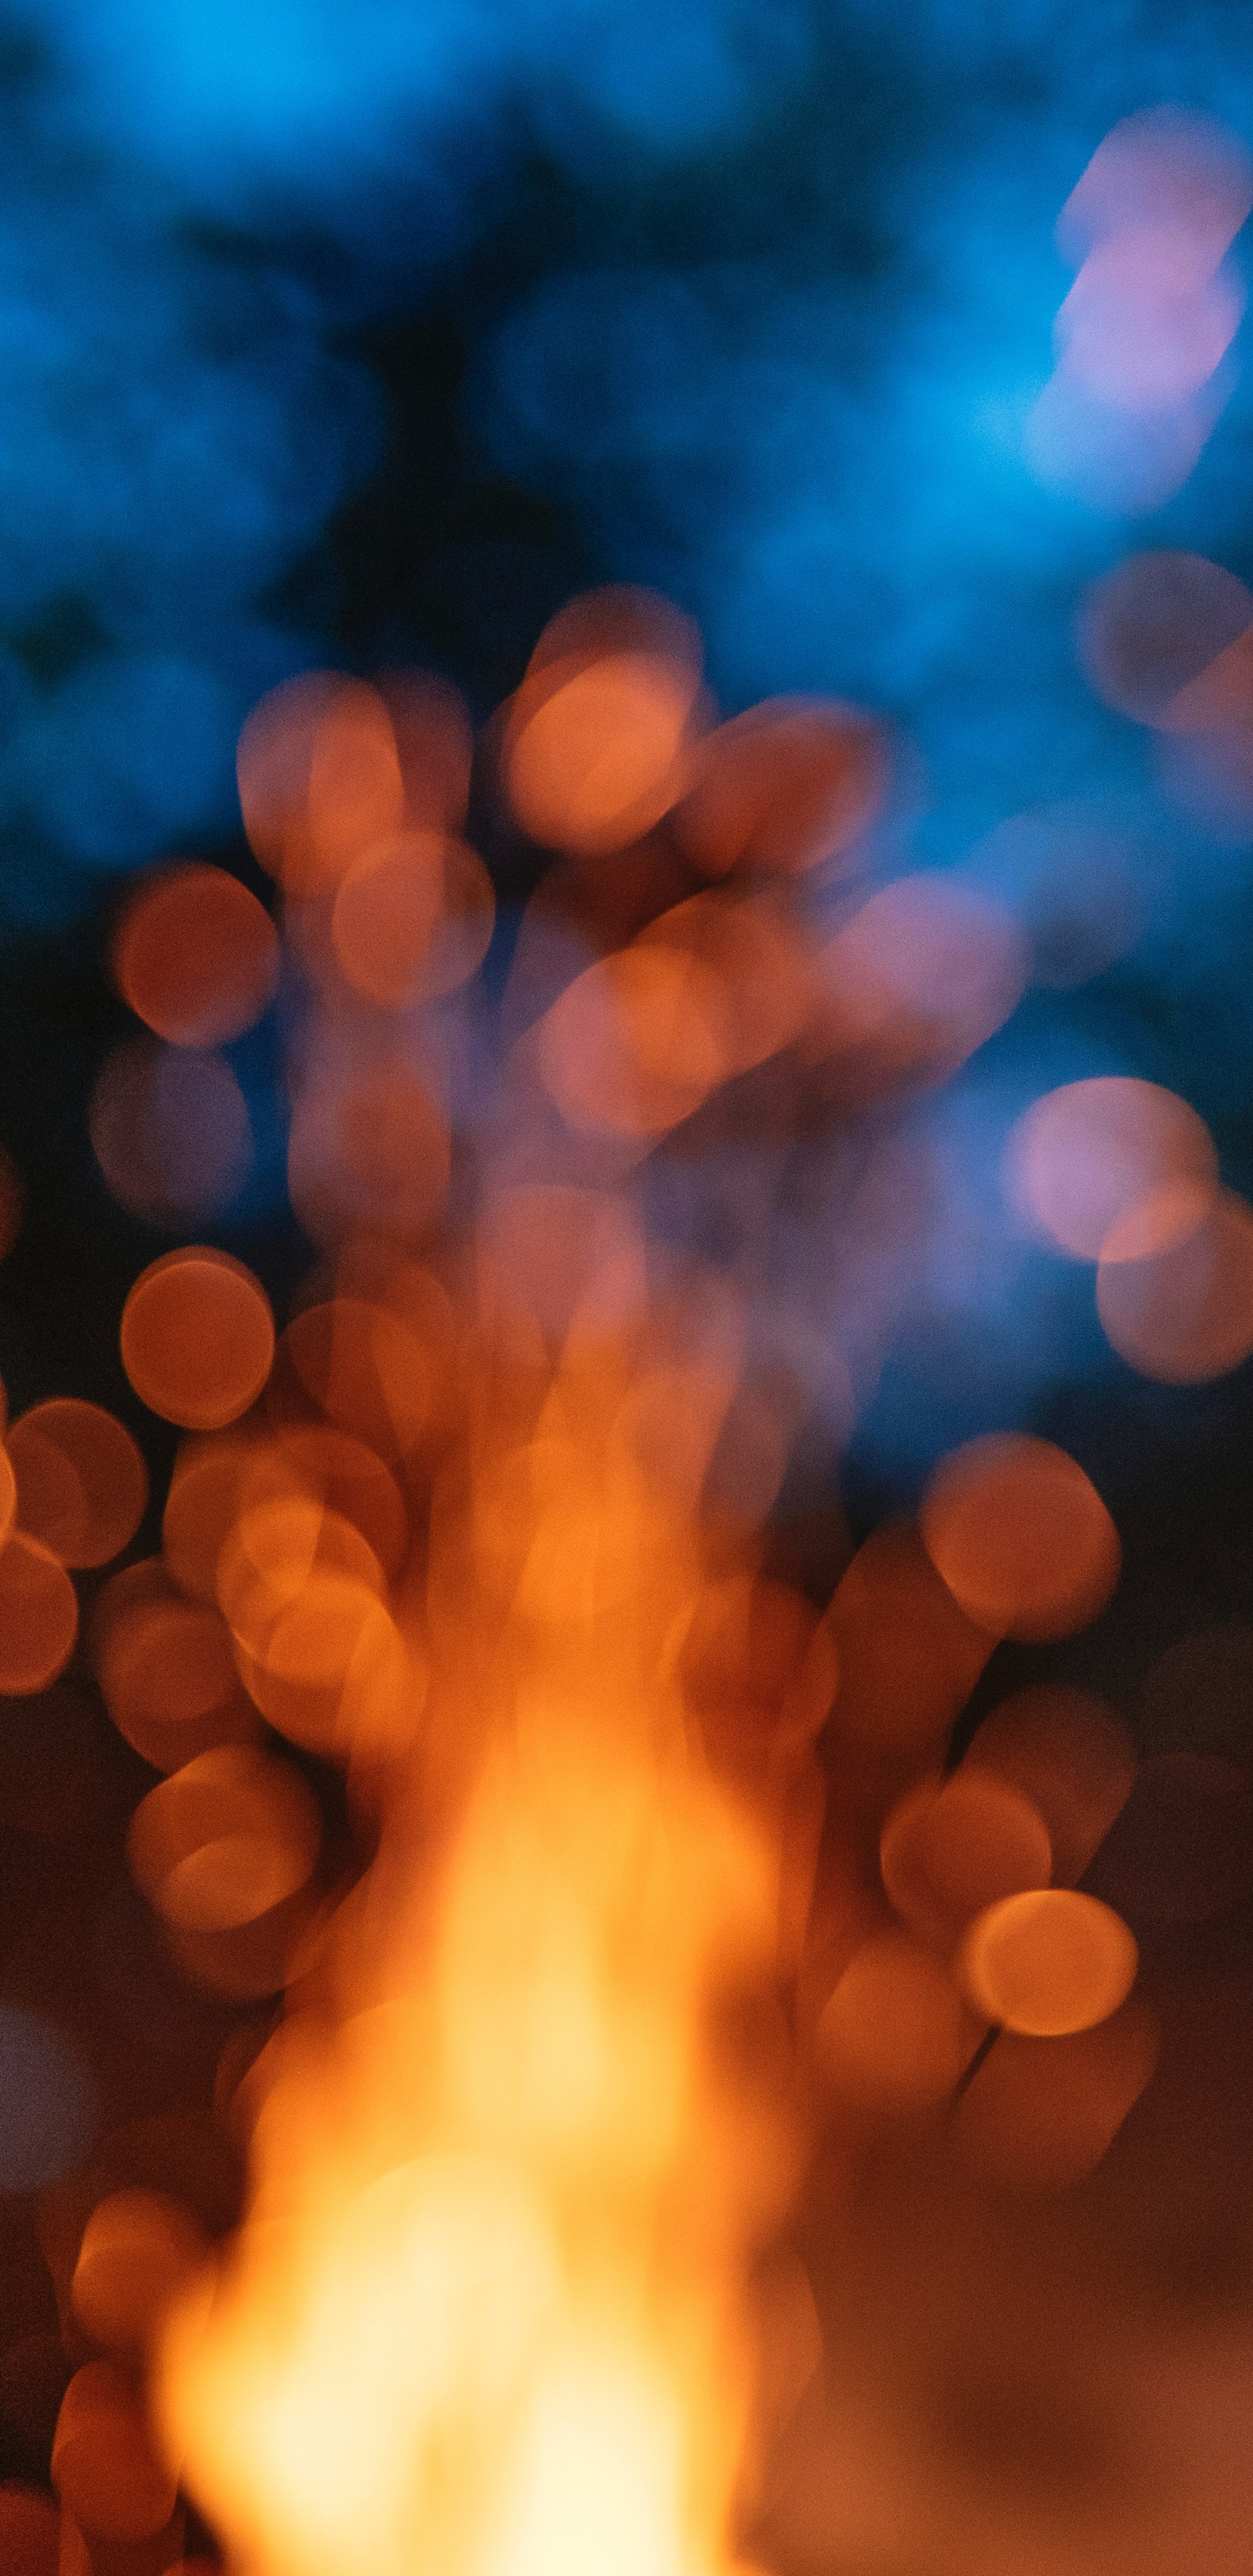 光, 热, 火焰, 天空, 篝火 壁纸 1440x2960 允许